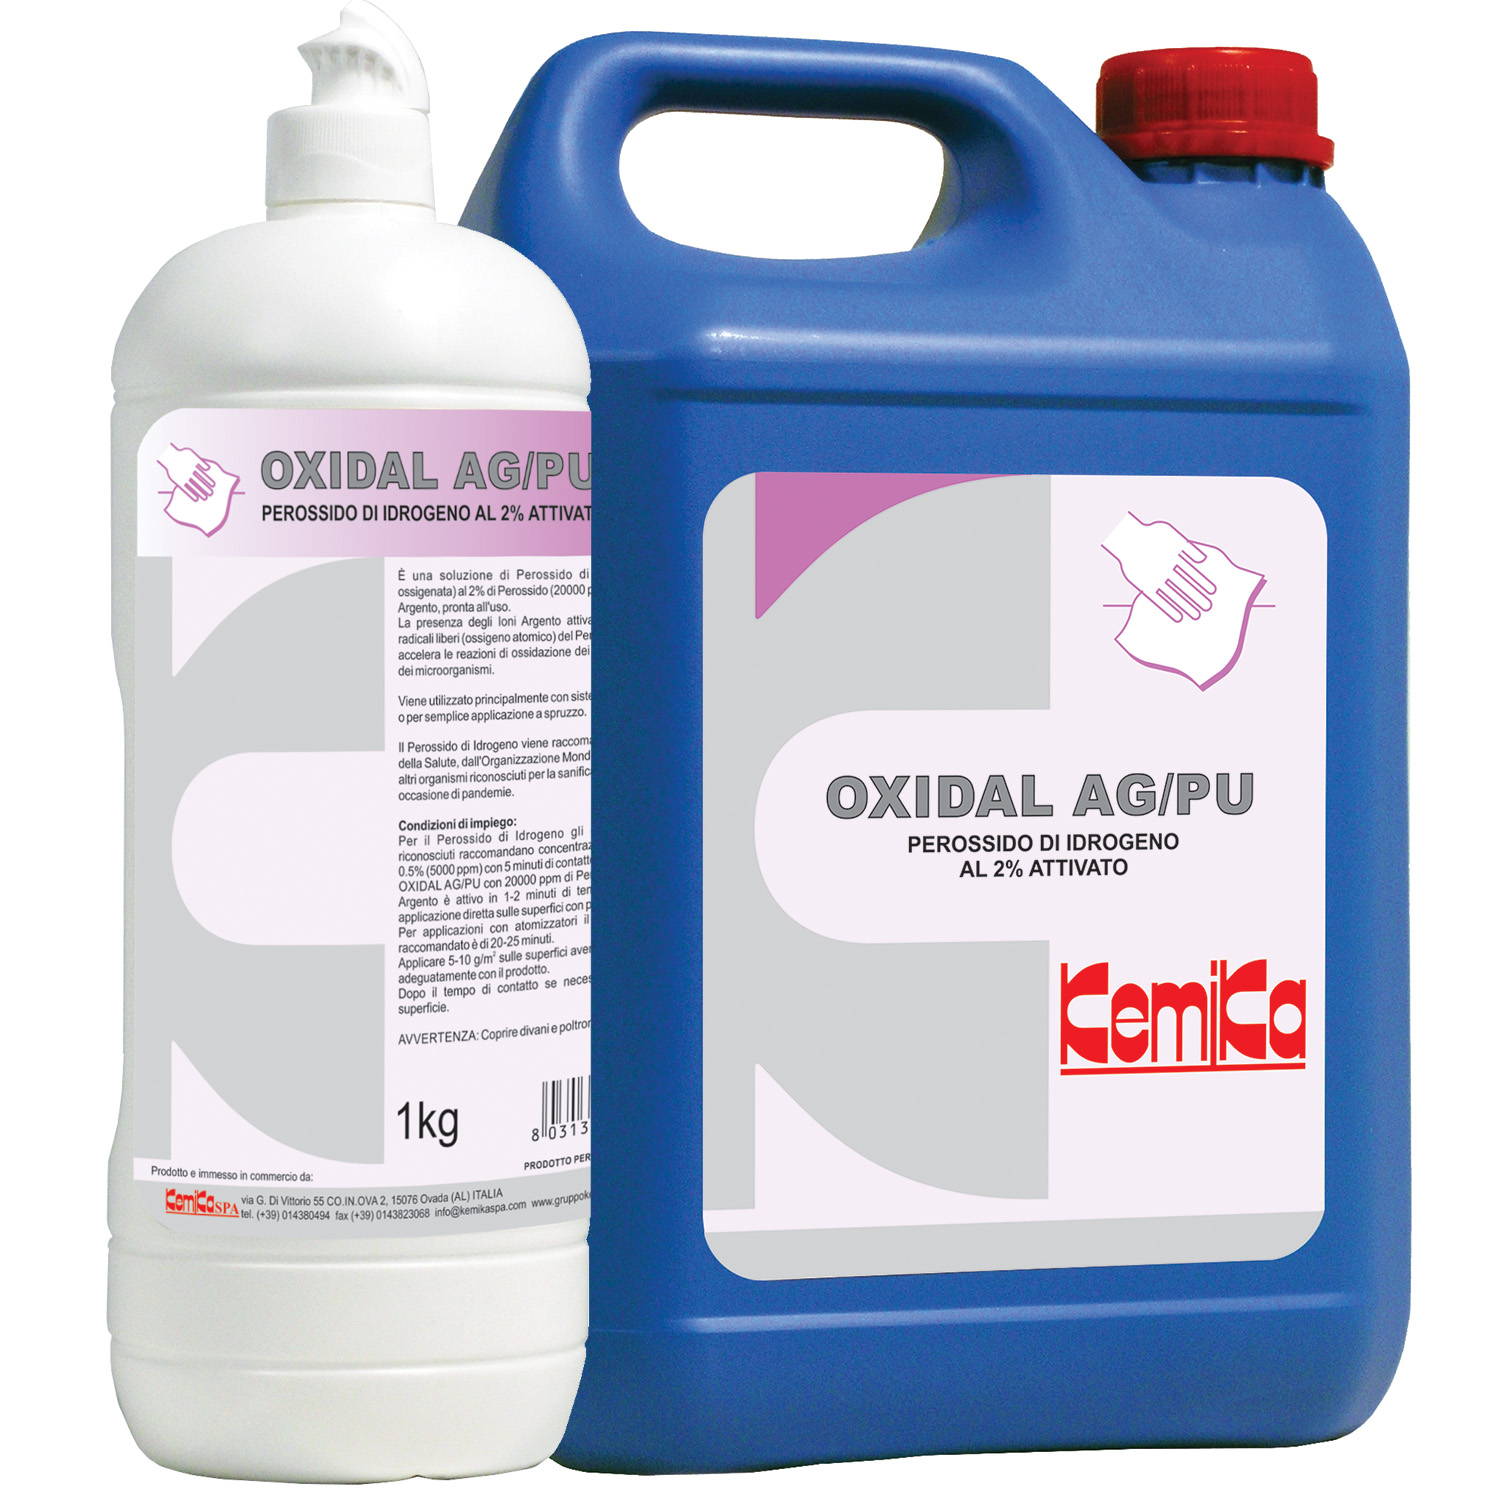 Oxidal AG/PU Perossido di Idrogeno al 2% attivato